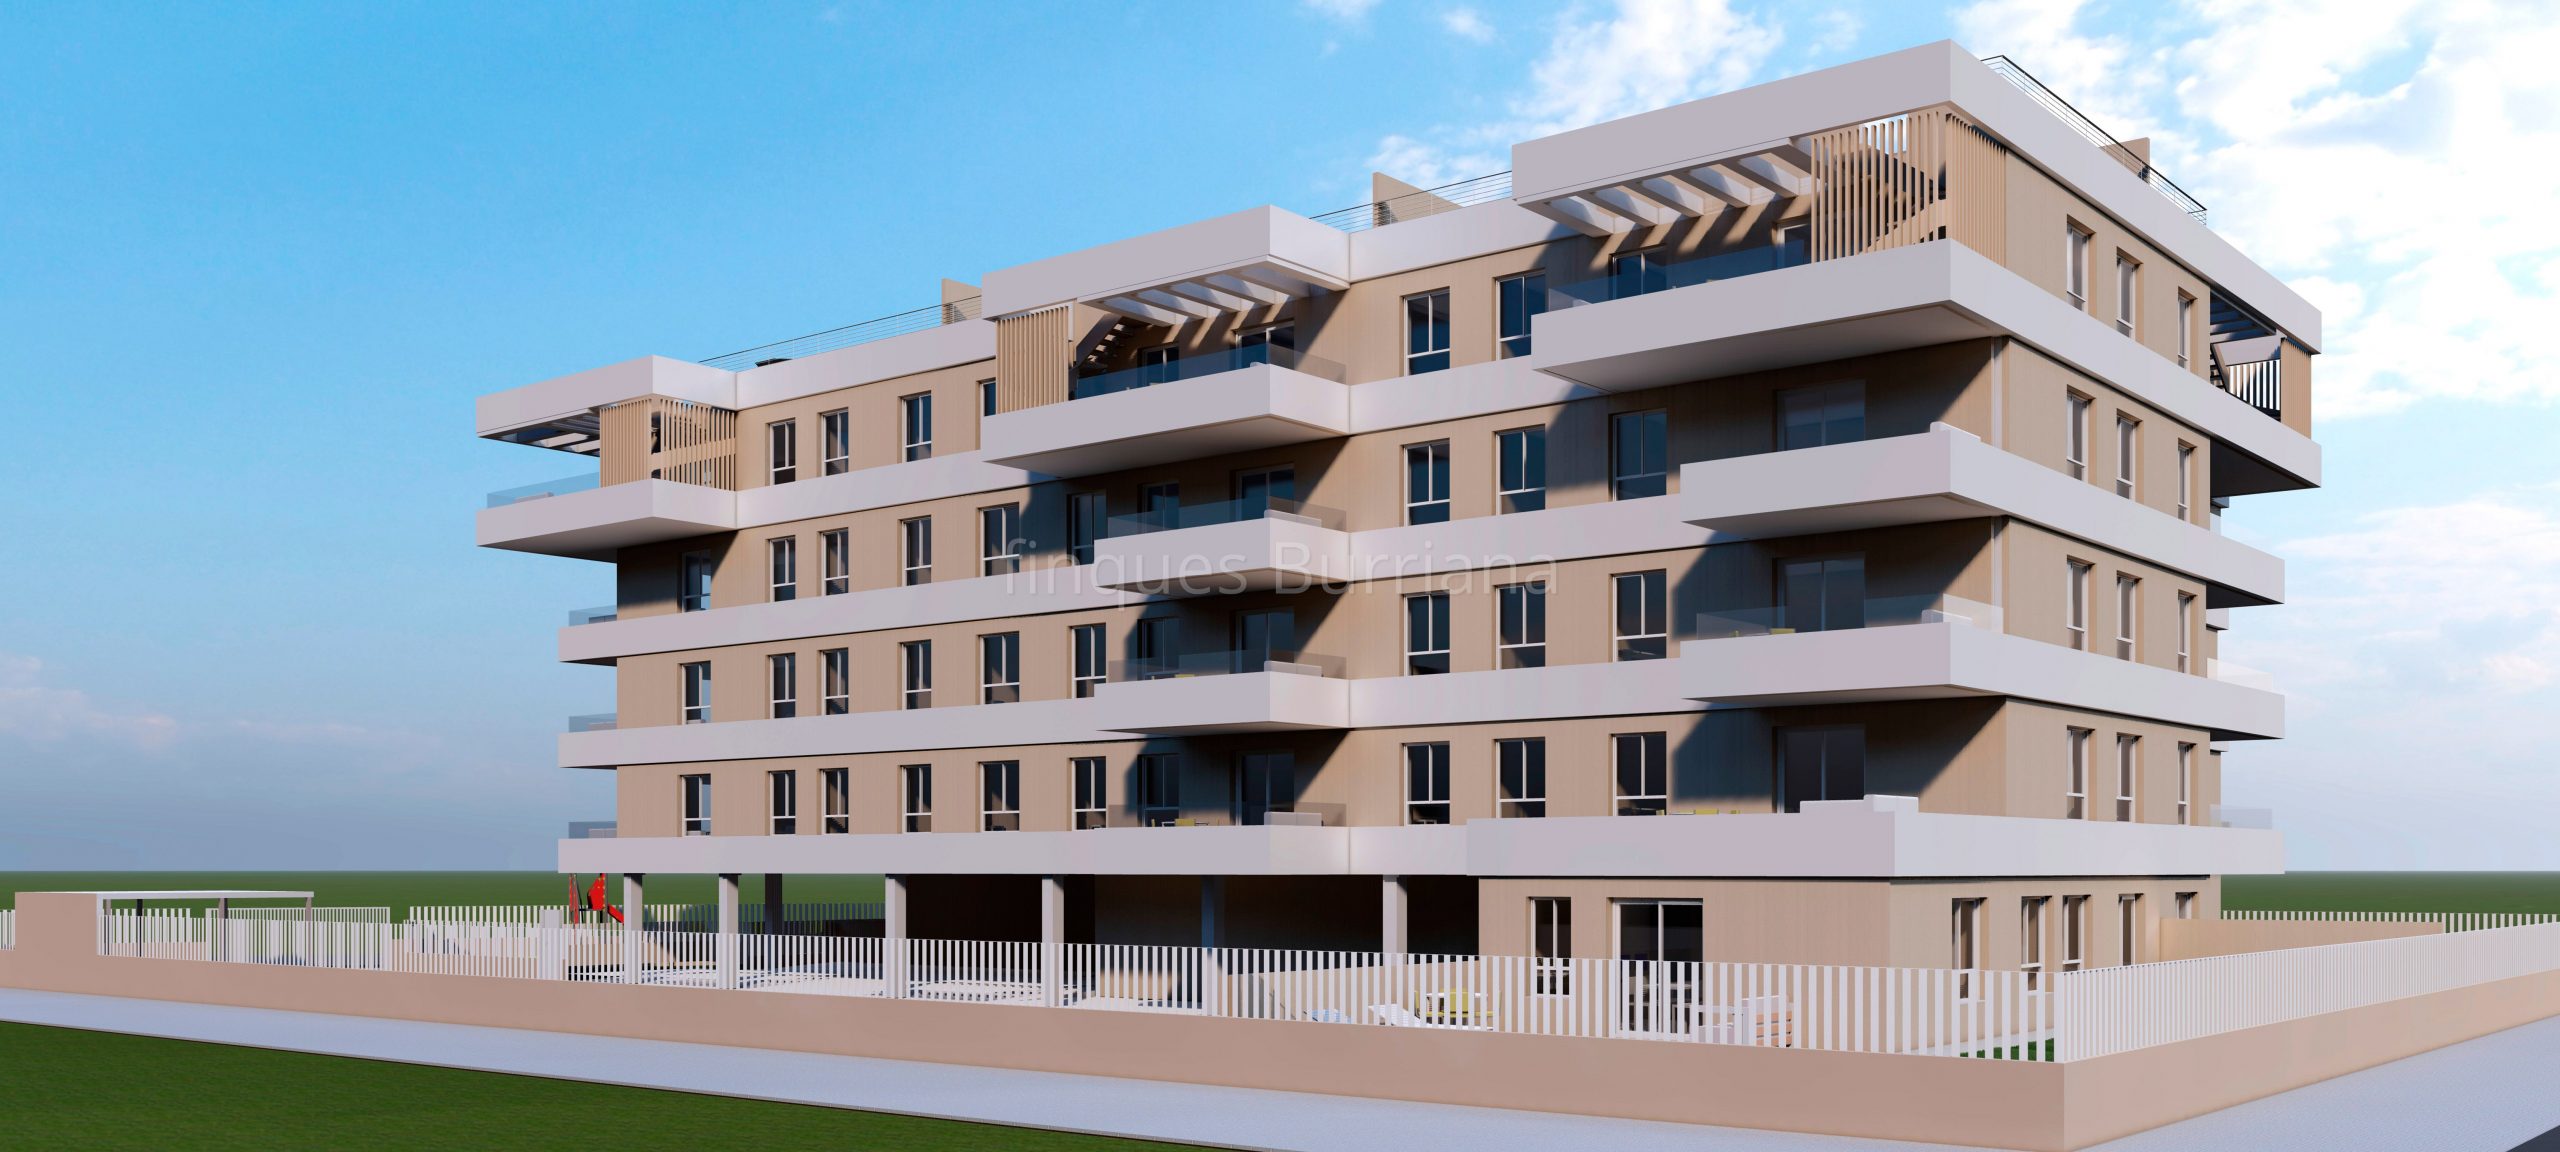 Próxima construcción de viviendas en Burriana (Castellón) zona Novenes de Calatrava